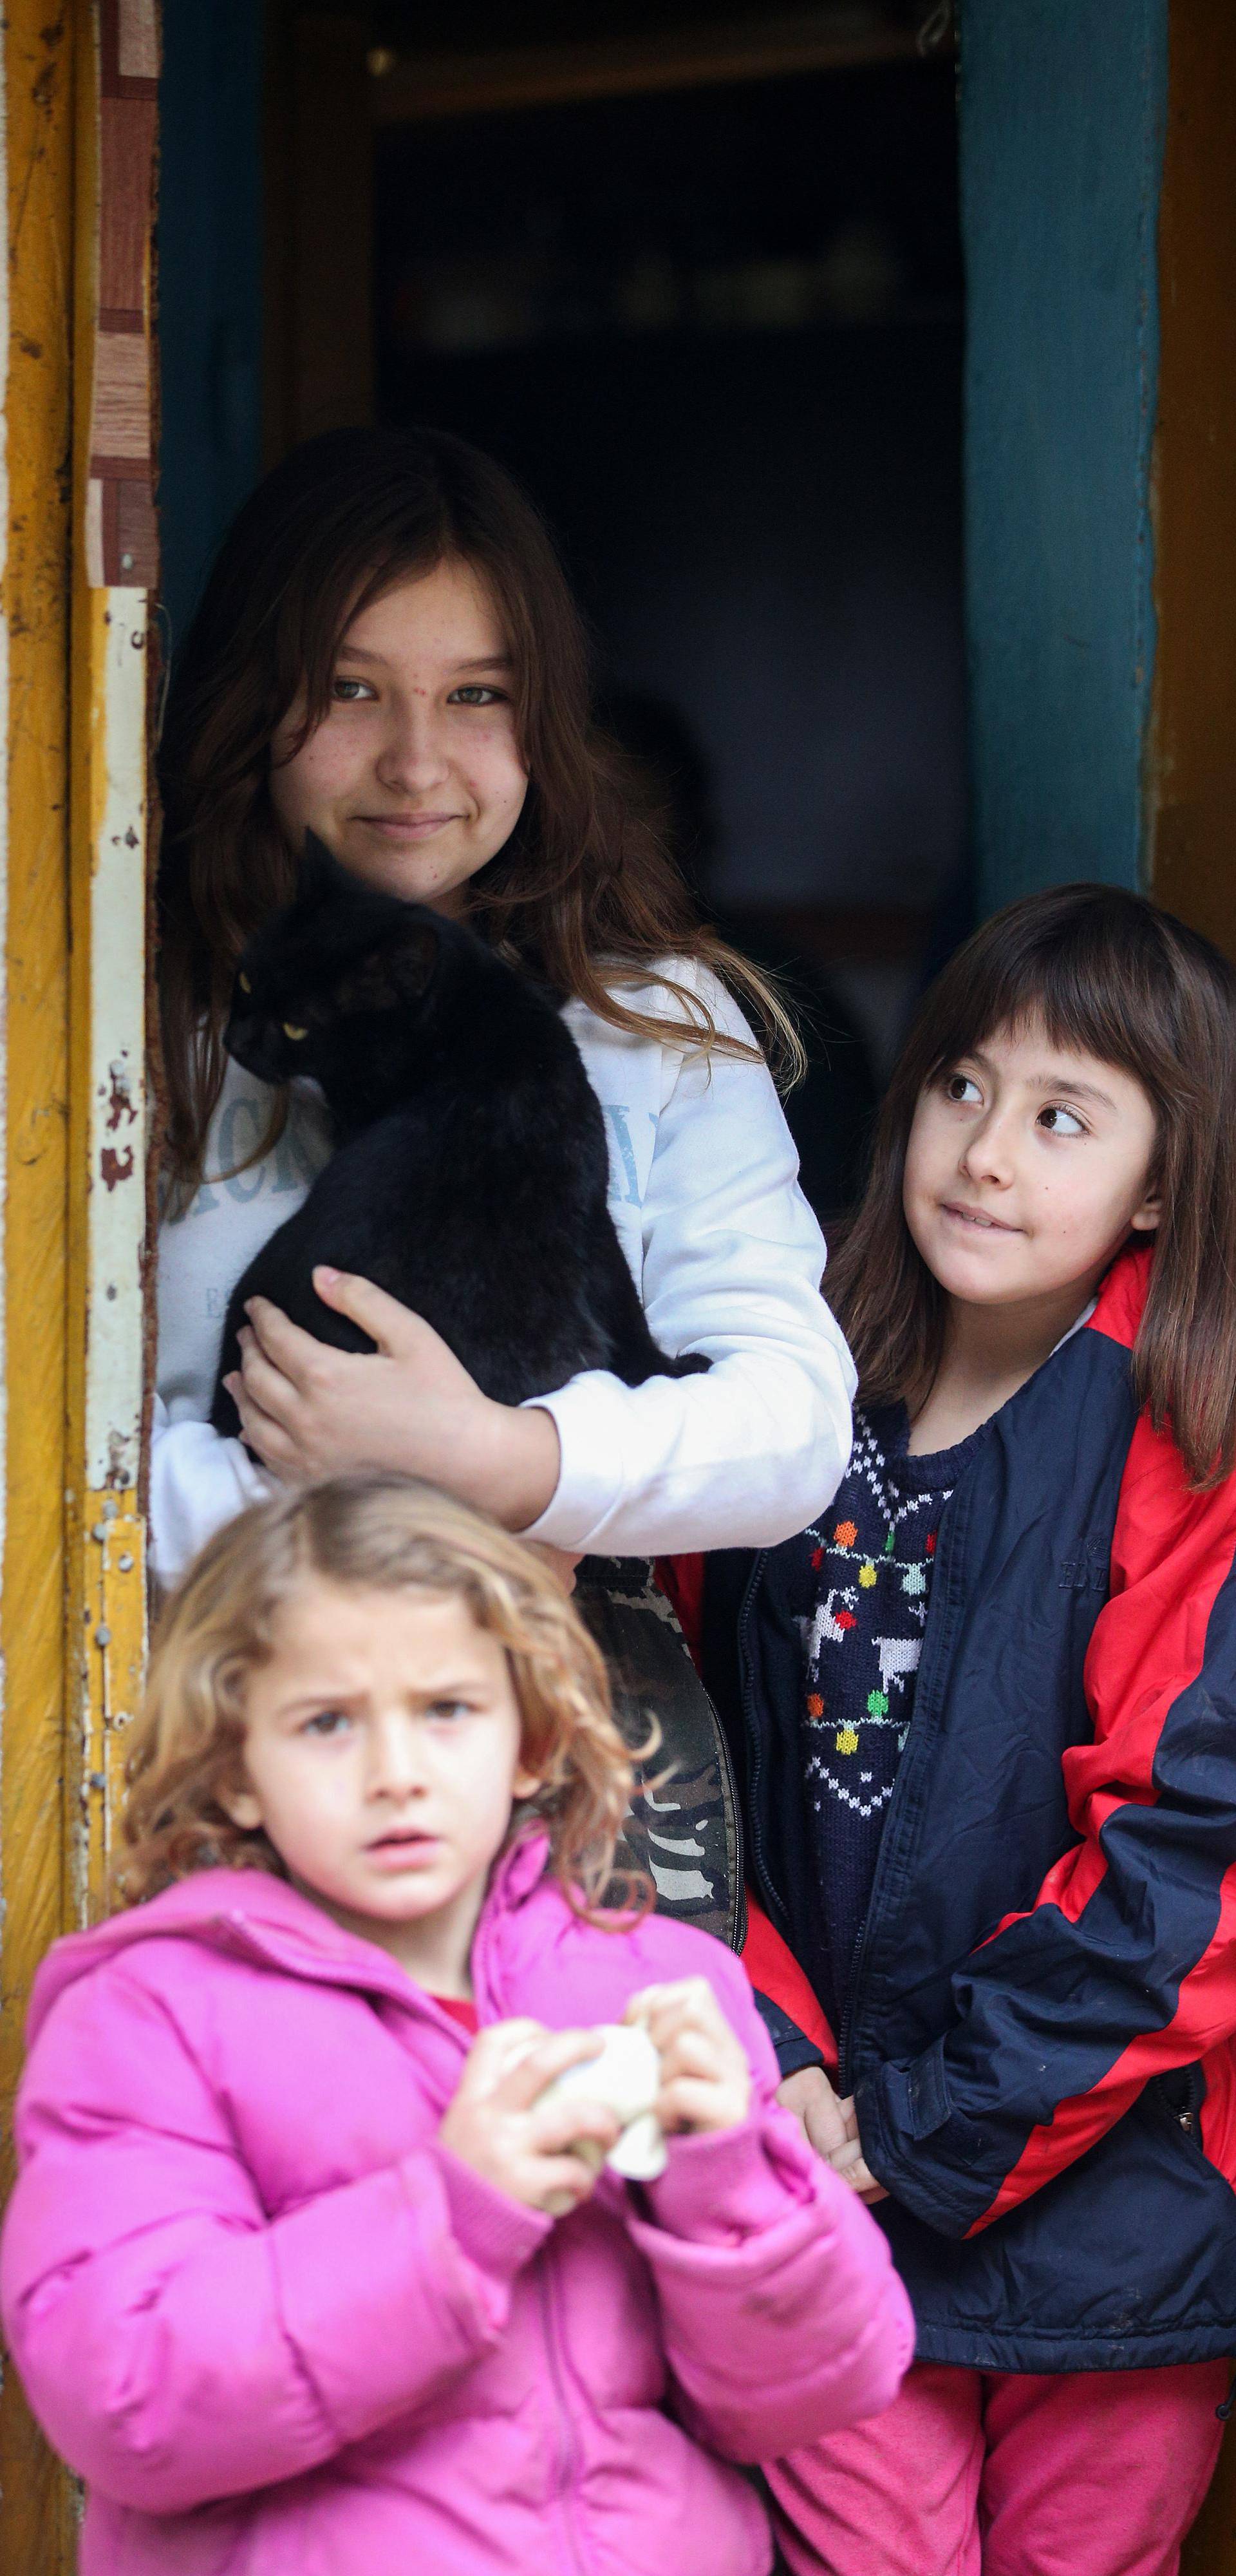 Zlatar: Obitelj Bolsec ima tri kćeri i žive u trošnoj drvenoj kući